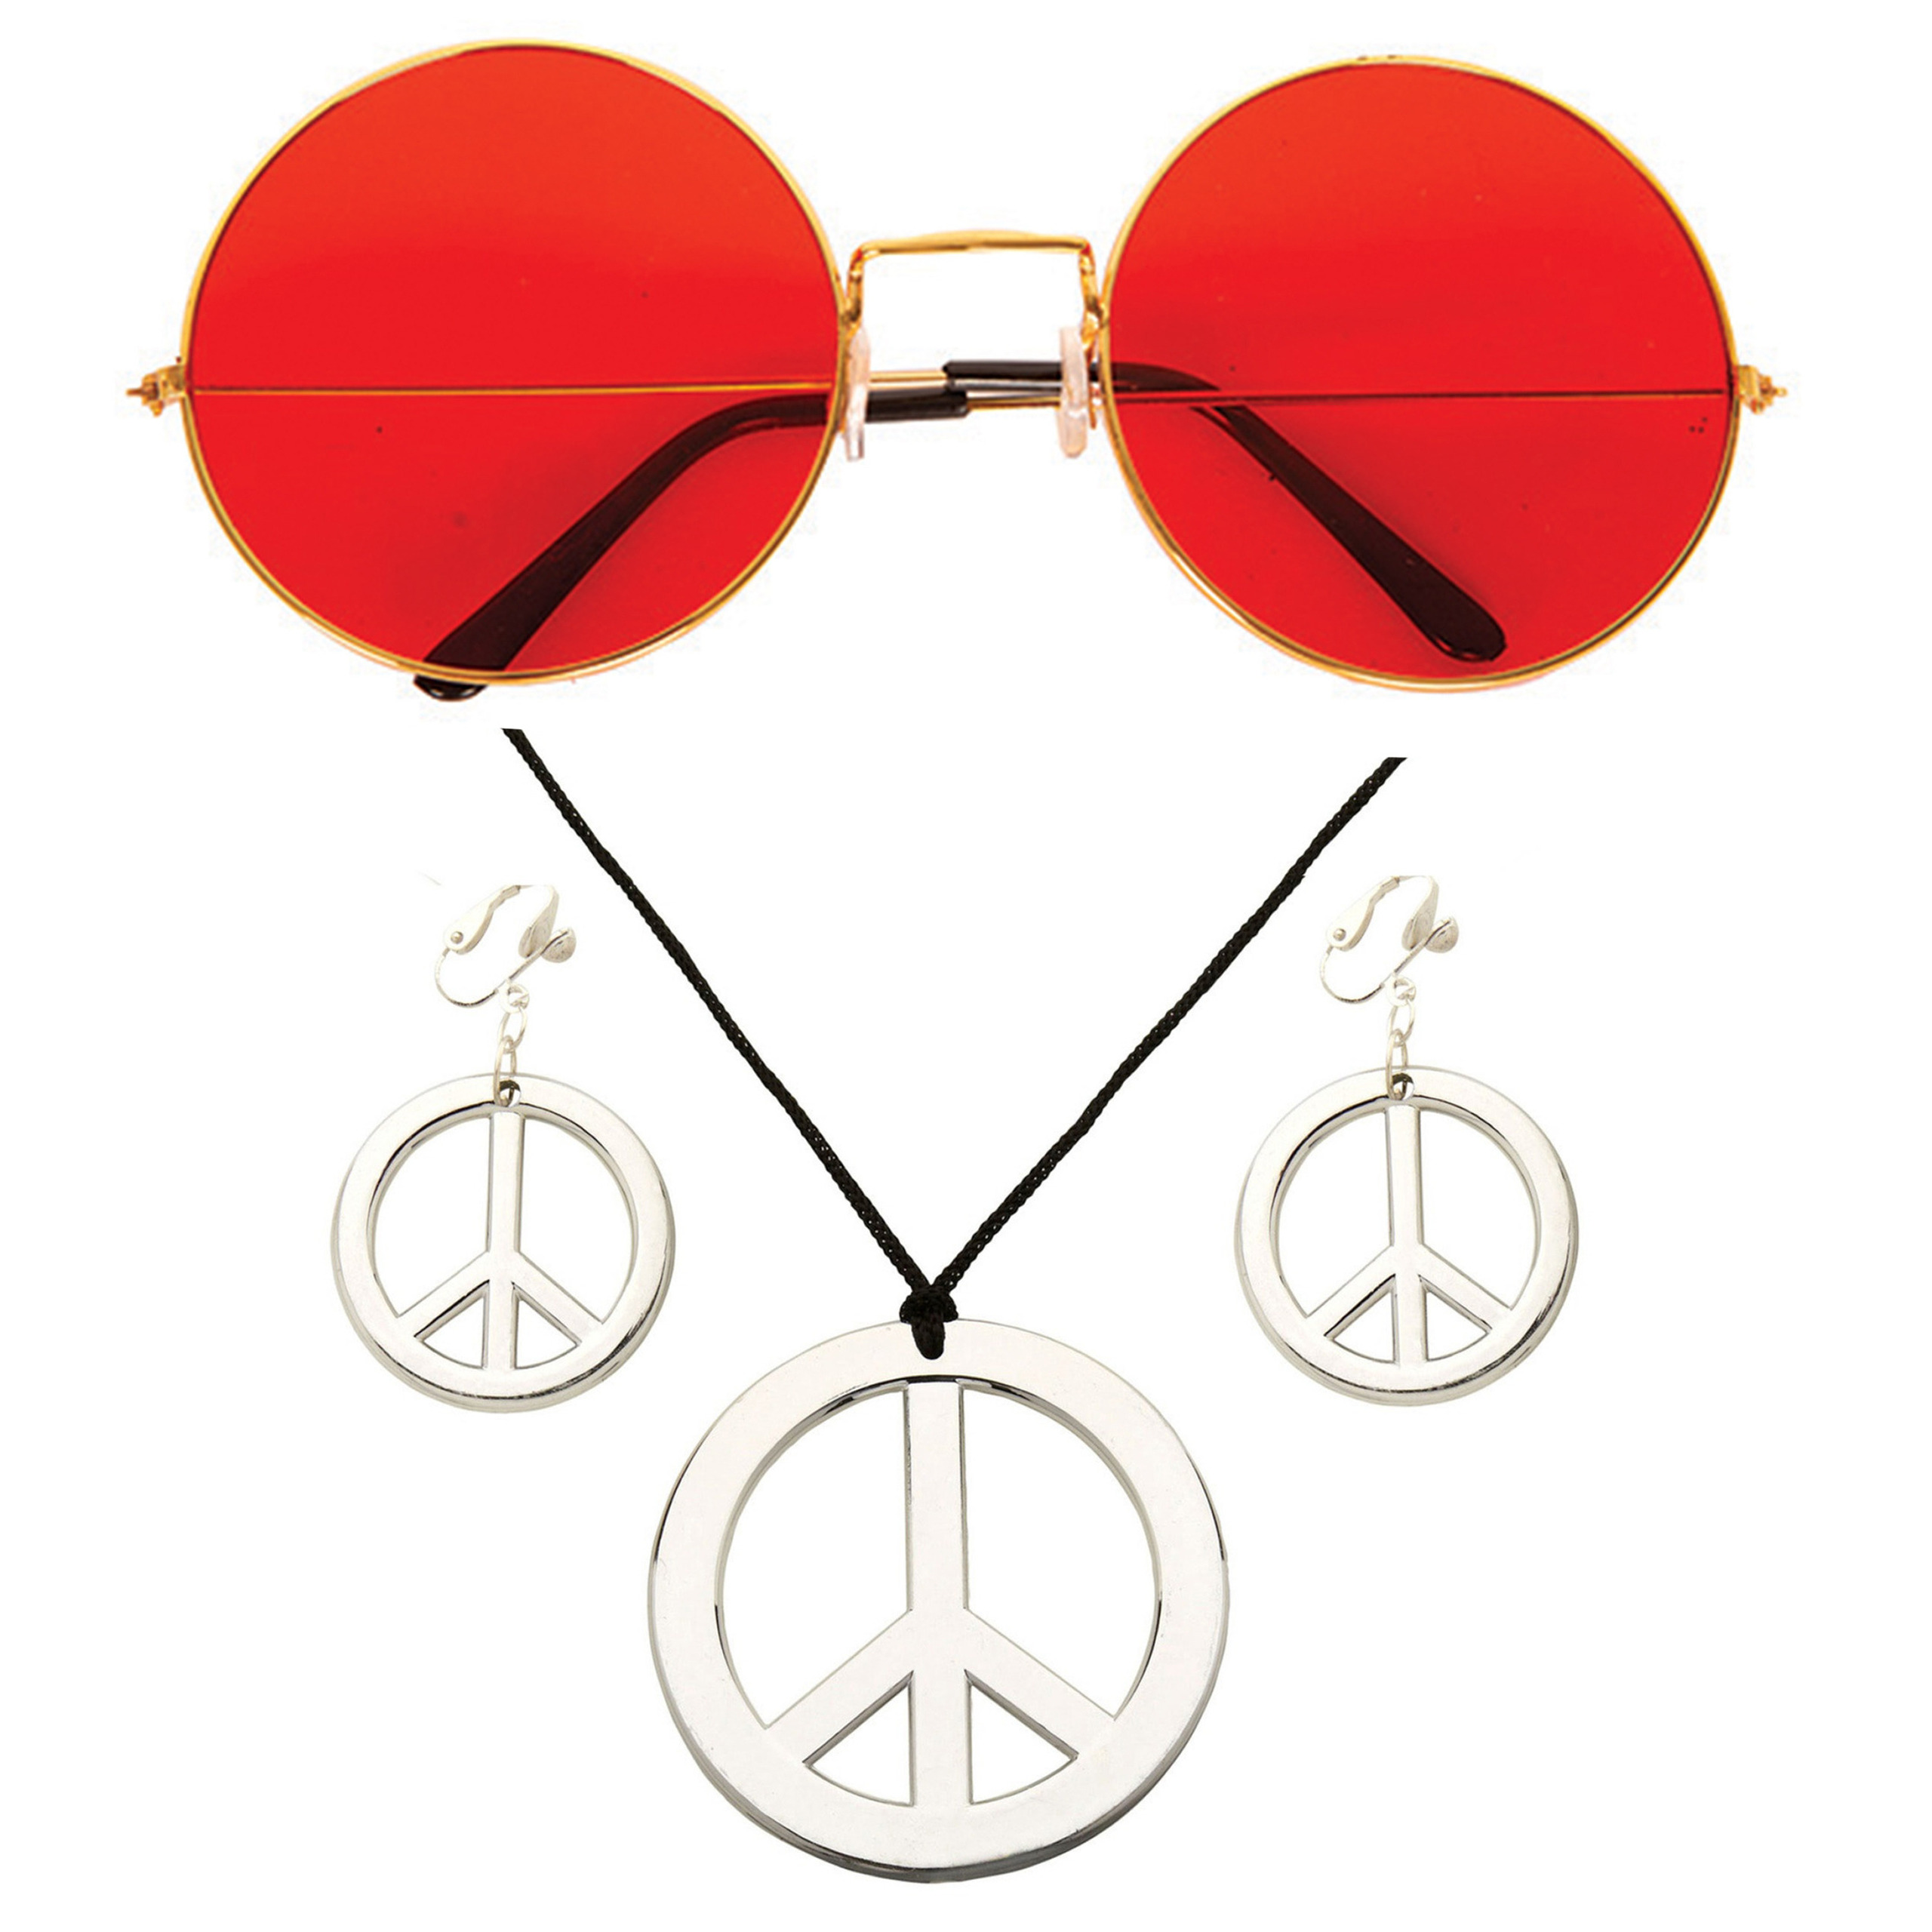 Toppers Hippie Flower Power Sixties verkleed sieraden met rode party bril